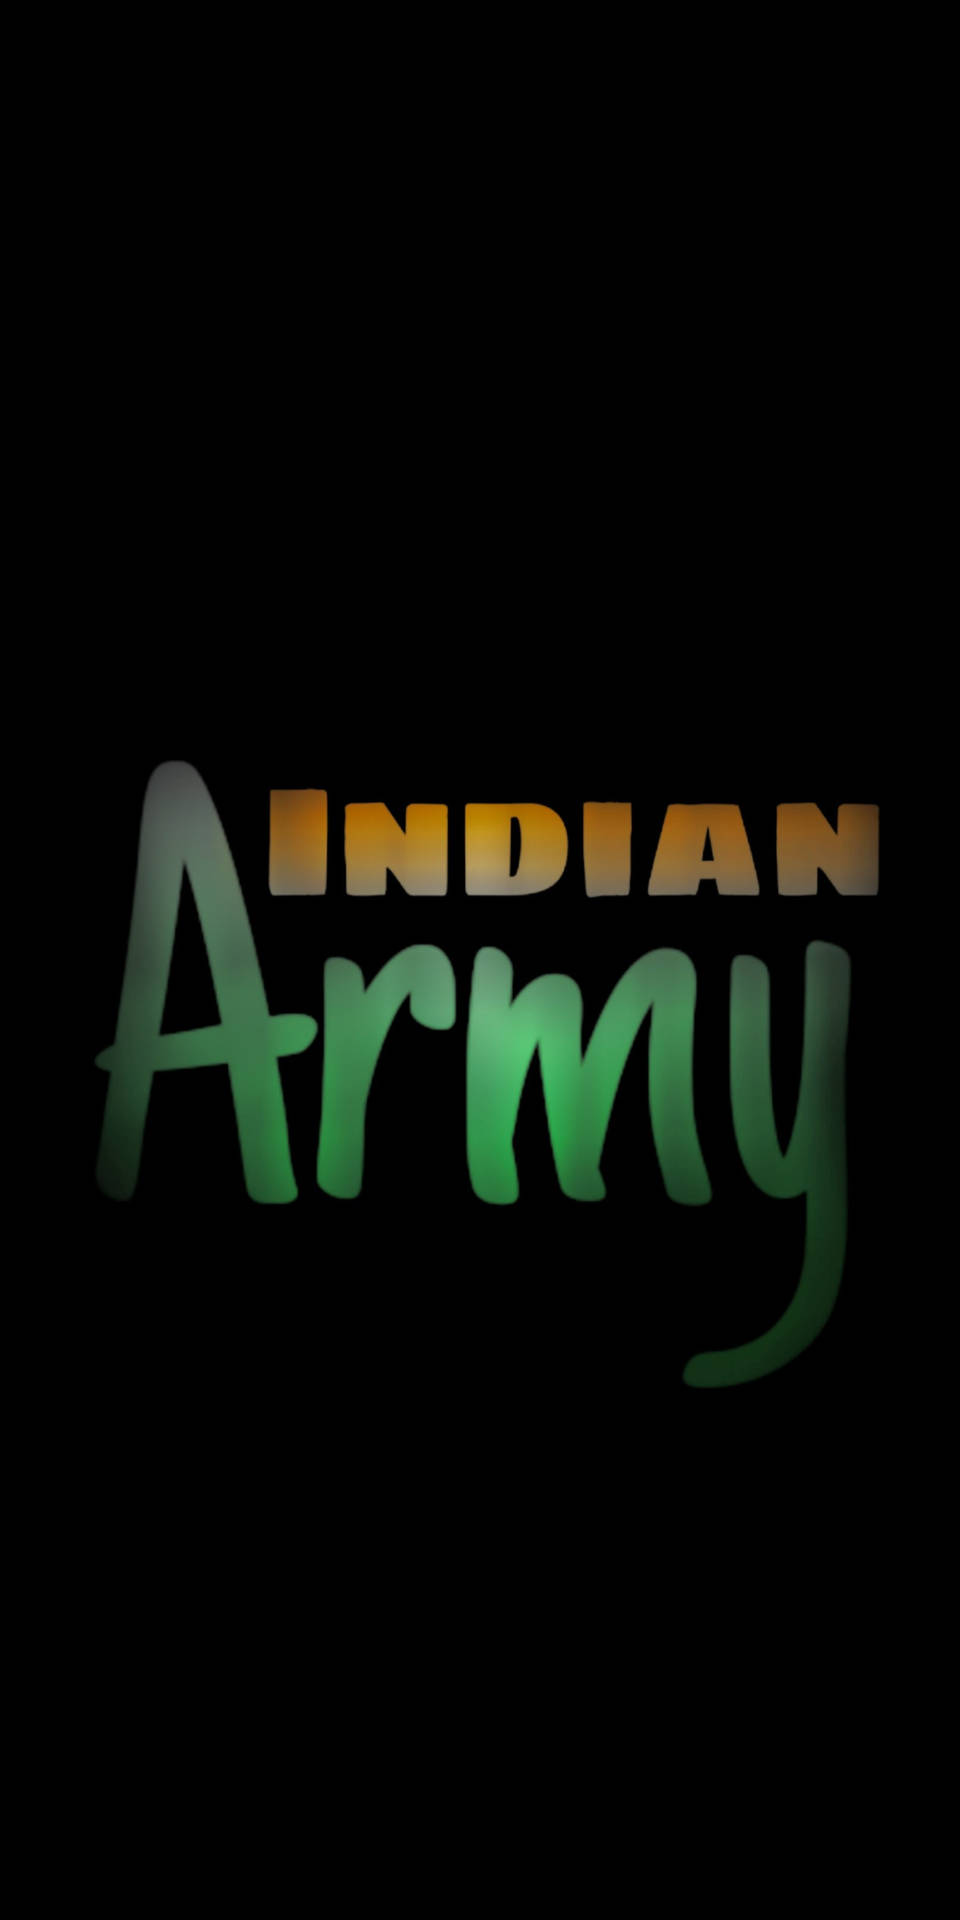 Logotipodel Ejército Indio En Arte De Texto. Fondo de pantalla